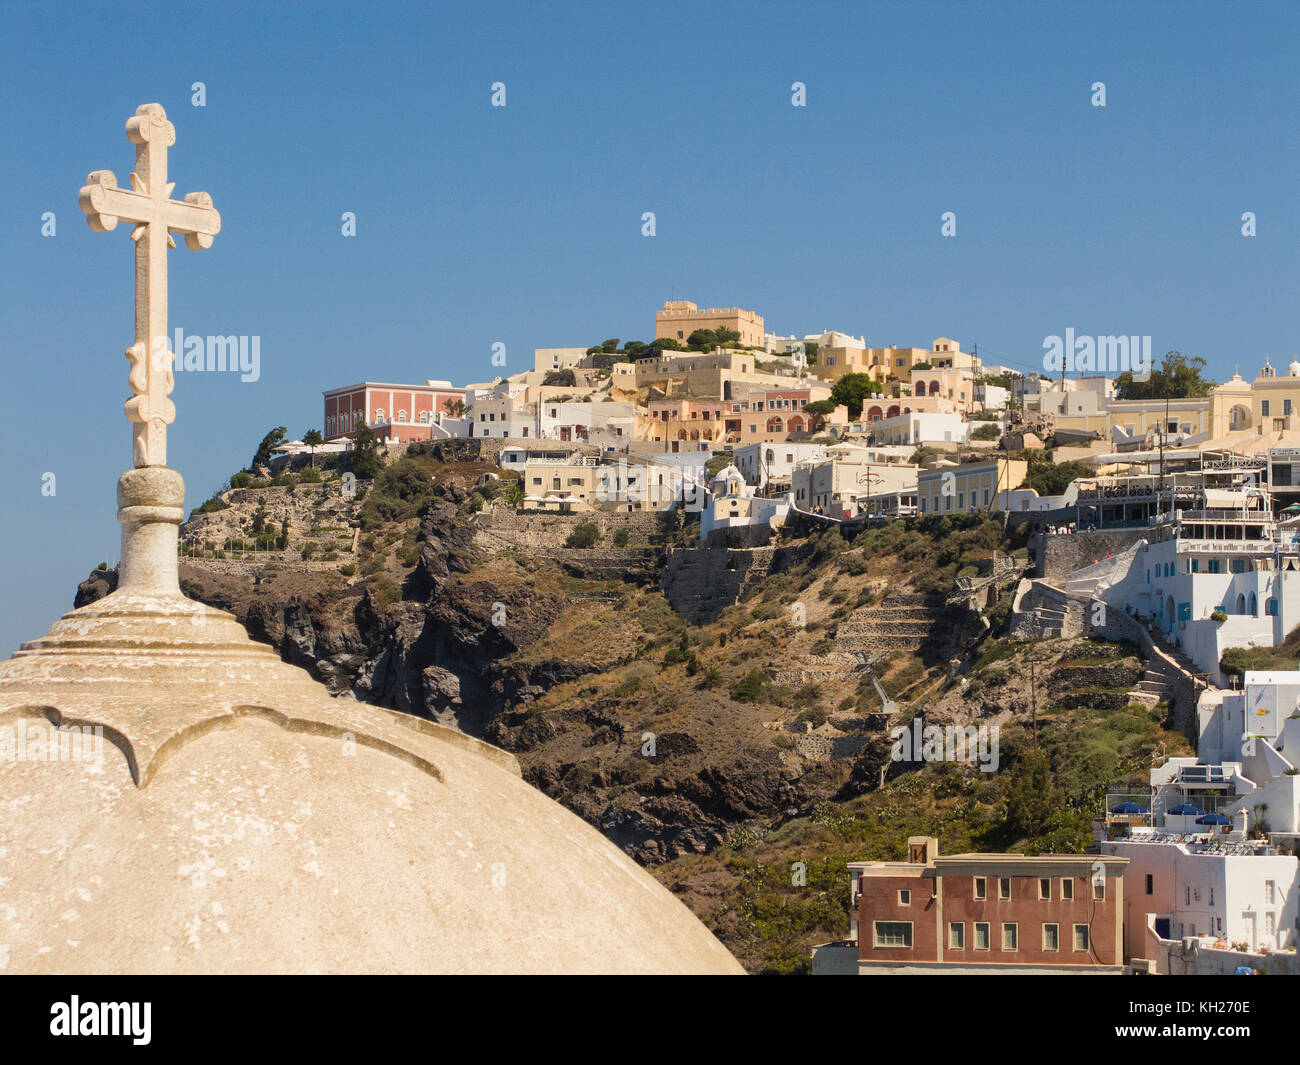 À l'église orthodoxe, le bord du cratère de l'île de Thira, Santorin, Cyclades, Mer Égée, Grèce Banque D'Images